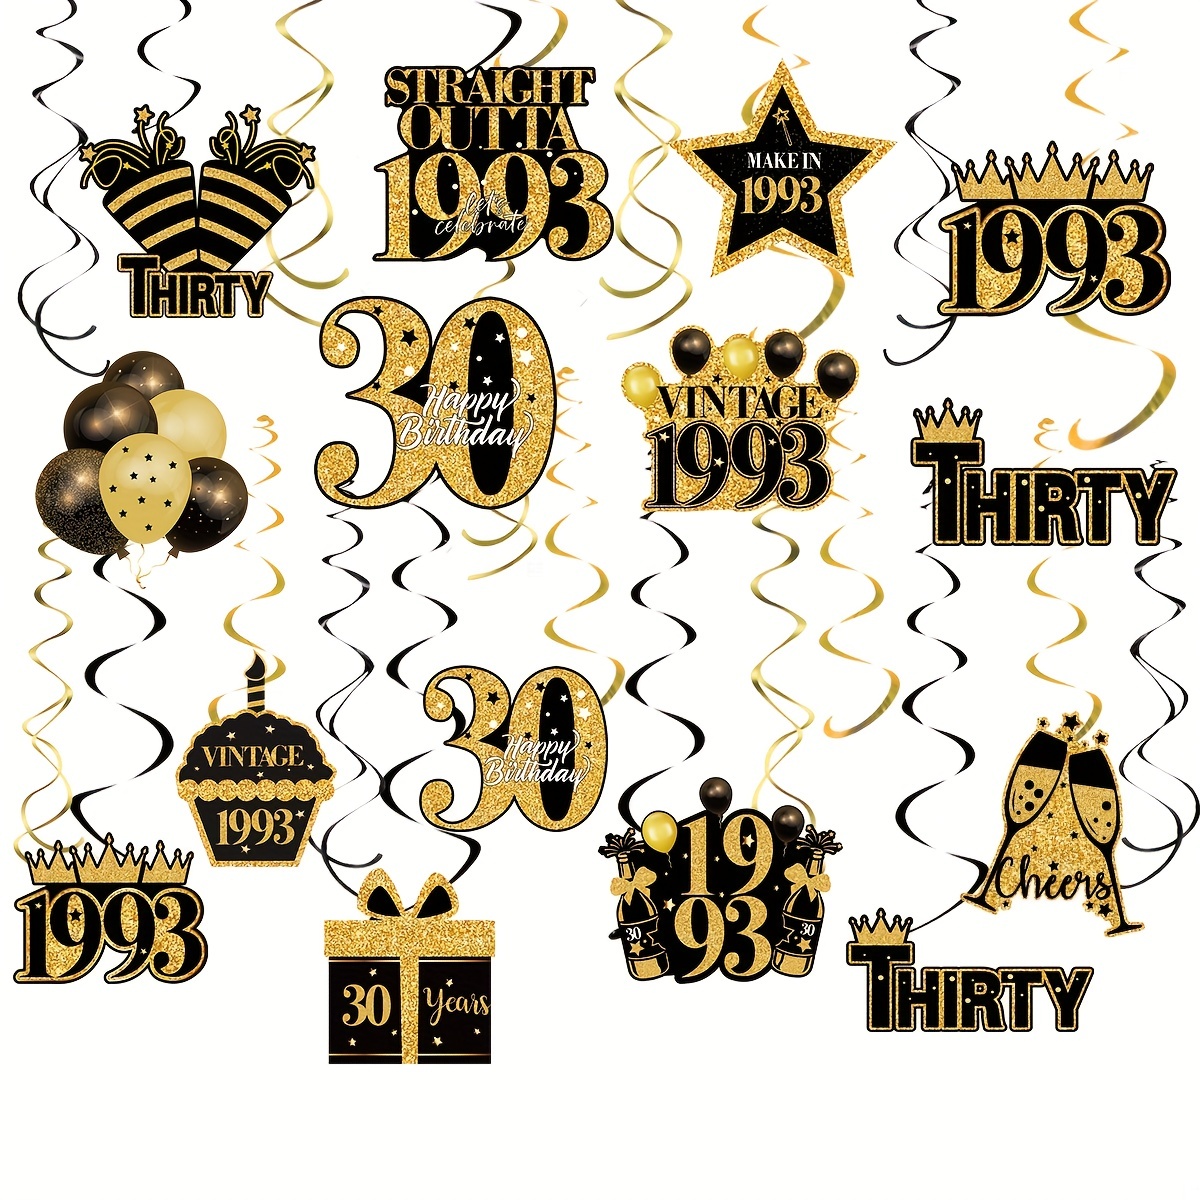 Celebración del aniversario de 40 años con corazón dorado y brillo dorado  sobre fondo negro. diseño